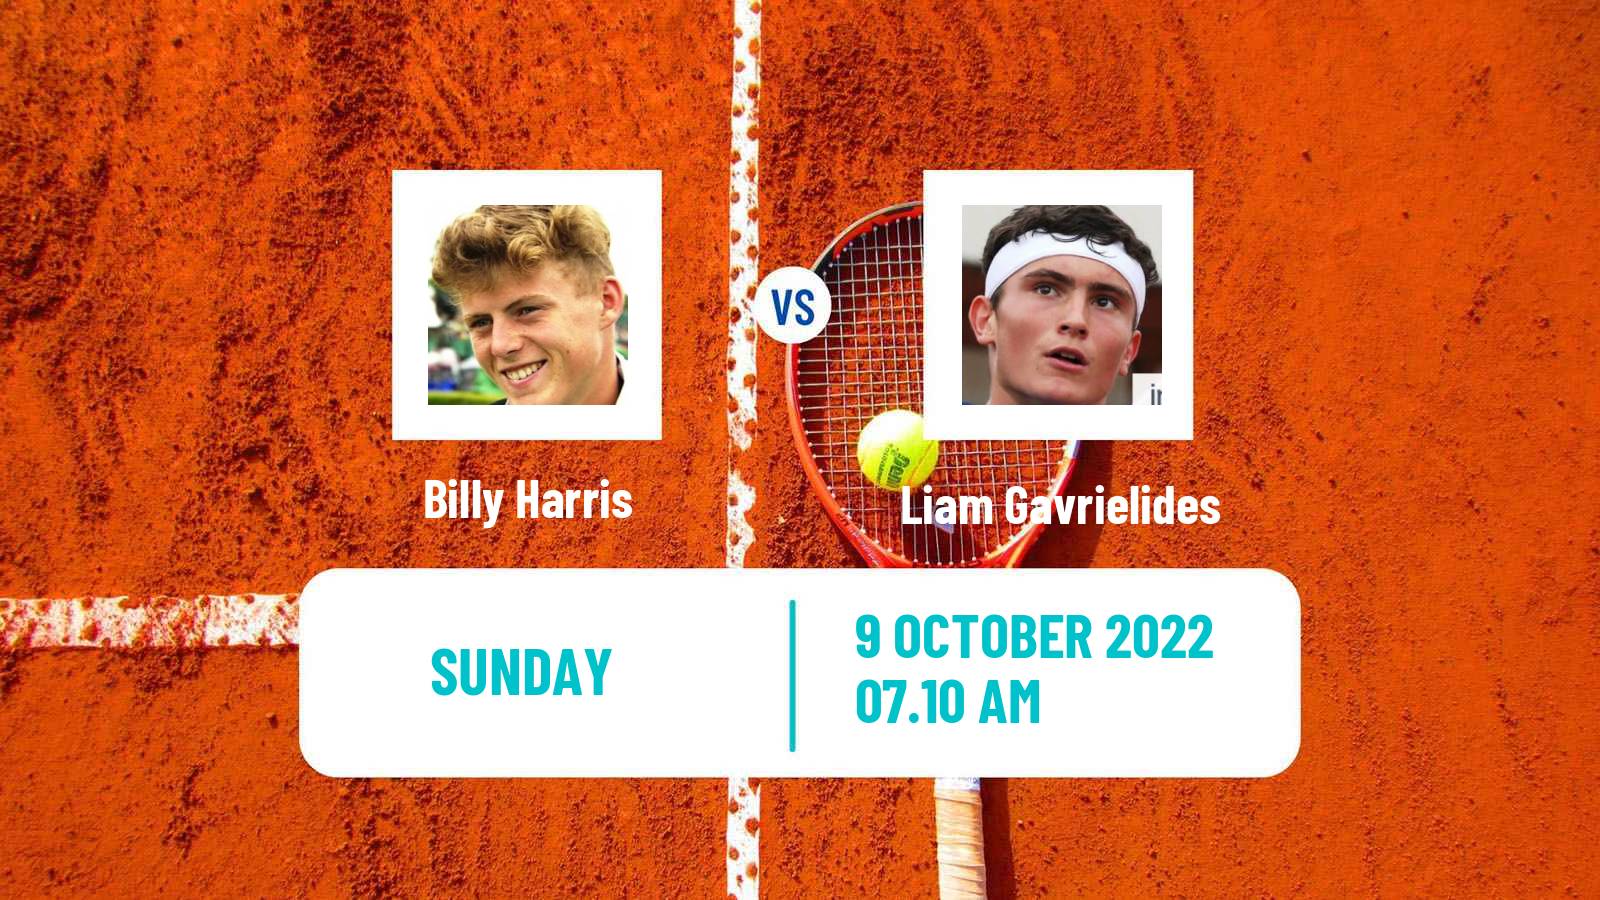 Tennis ATP Challenger Billy Harris - Liam Gavrielides